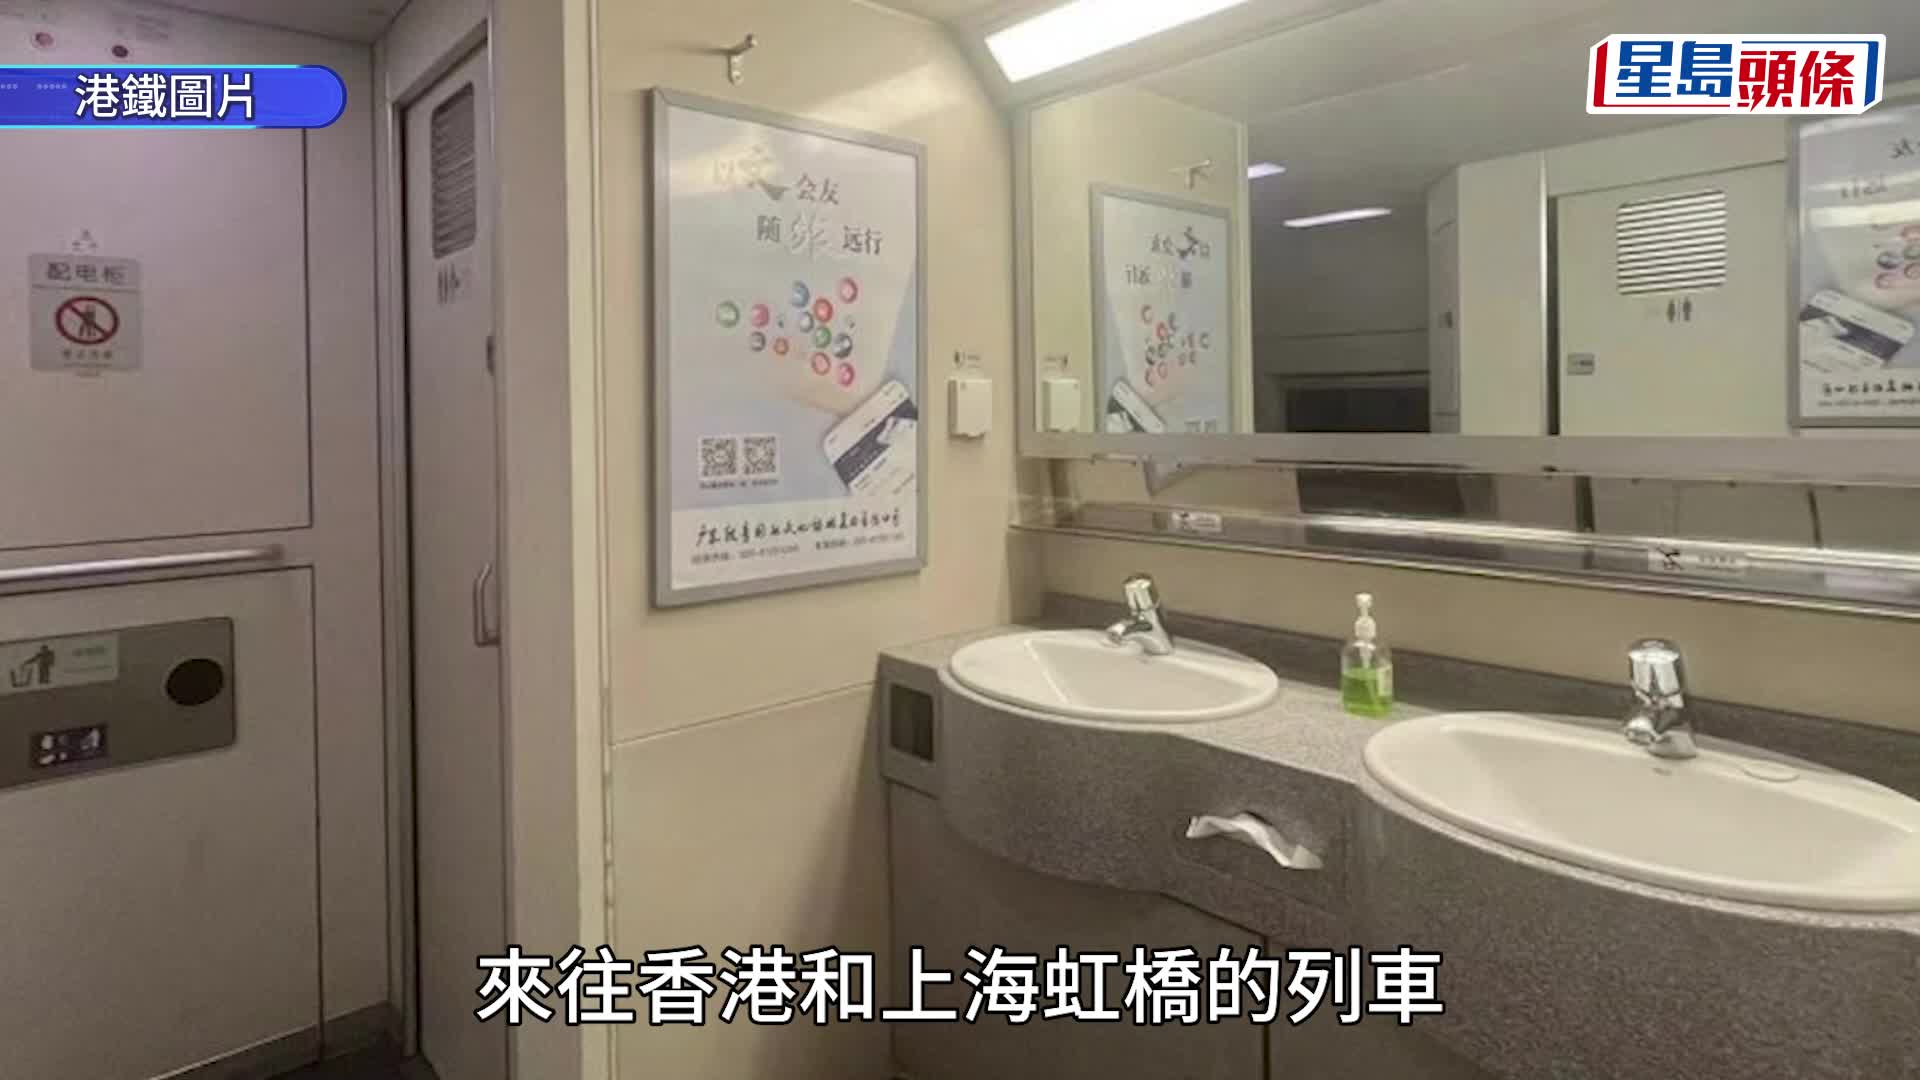 高鐵香港段首次引進臥鋪列車連接京滬 車票明日發售 往北京臥鋪最平1031元